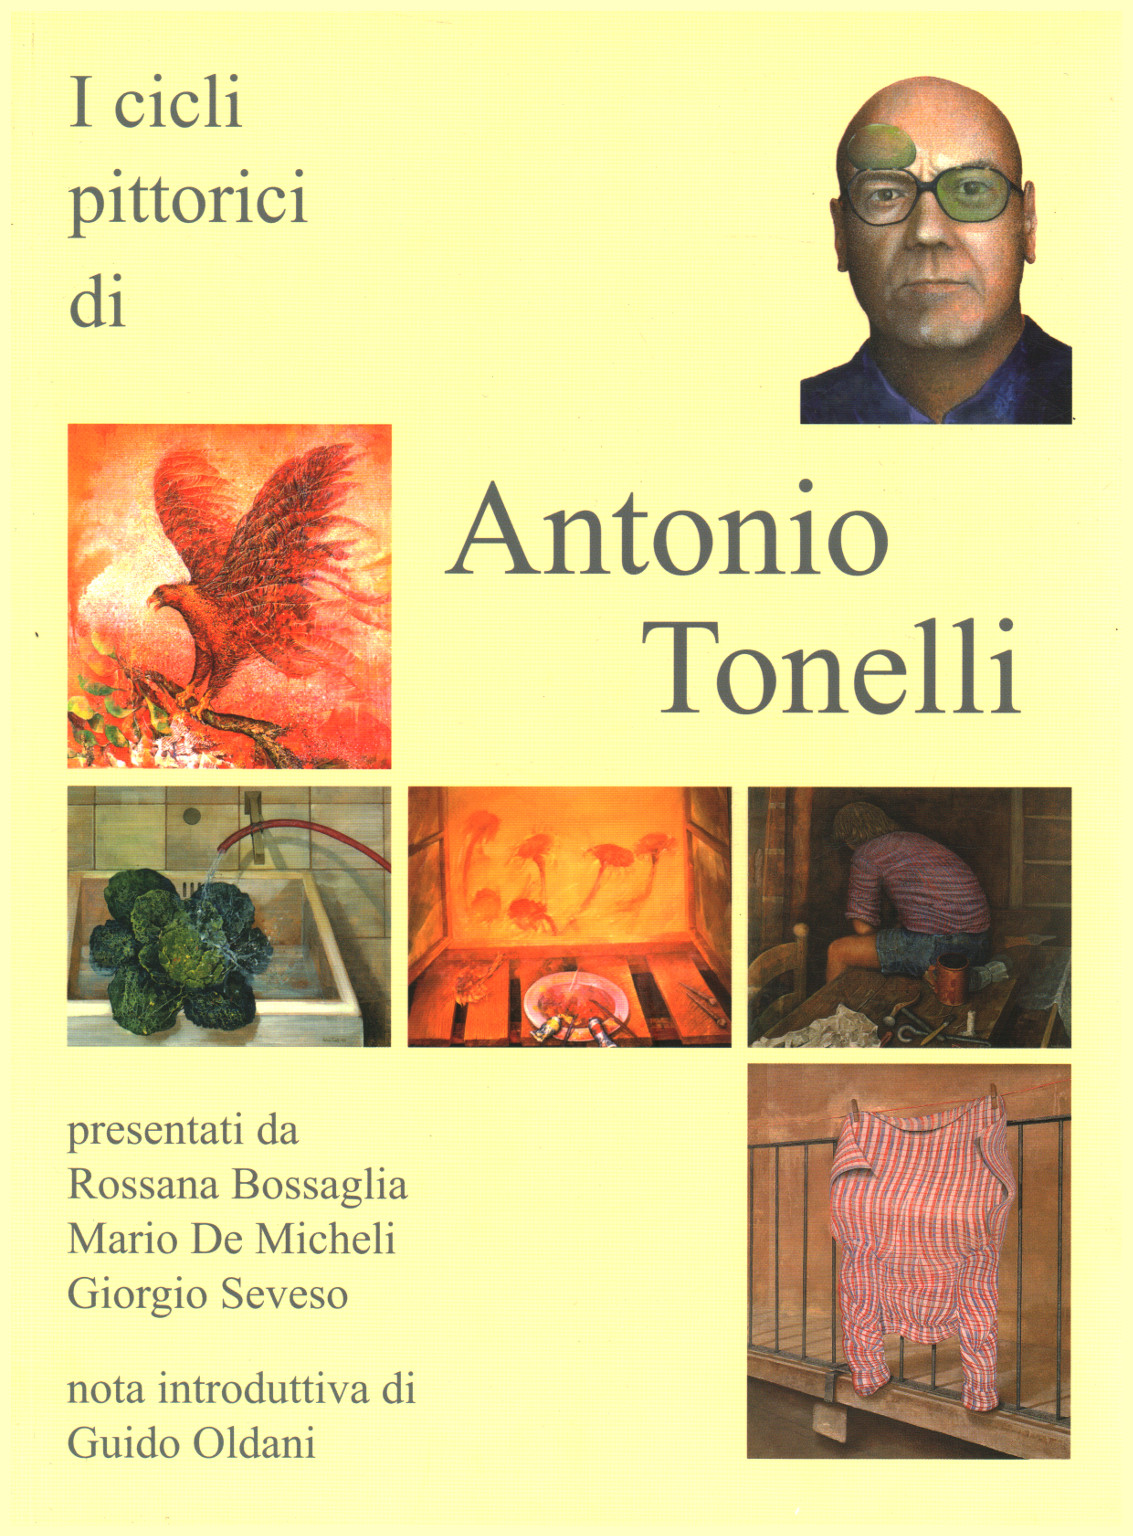 El ciclo de pinturas de Antonio Tonelli, s.una.